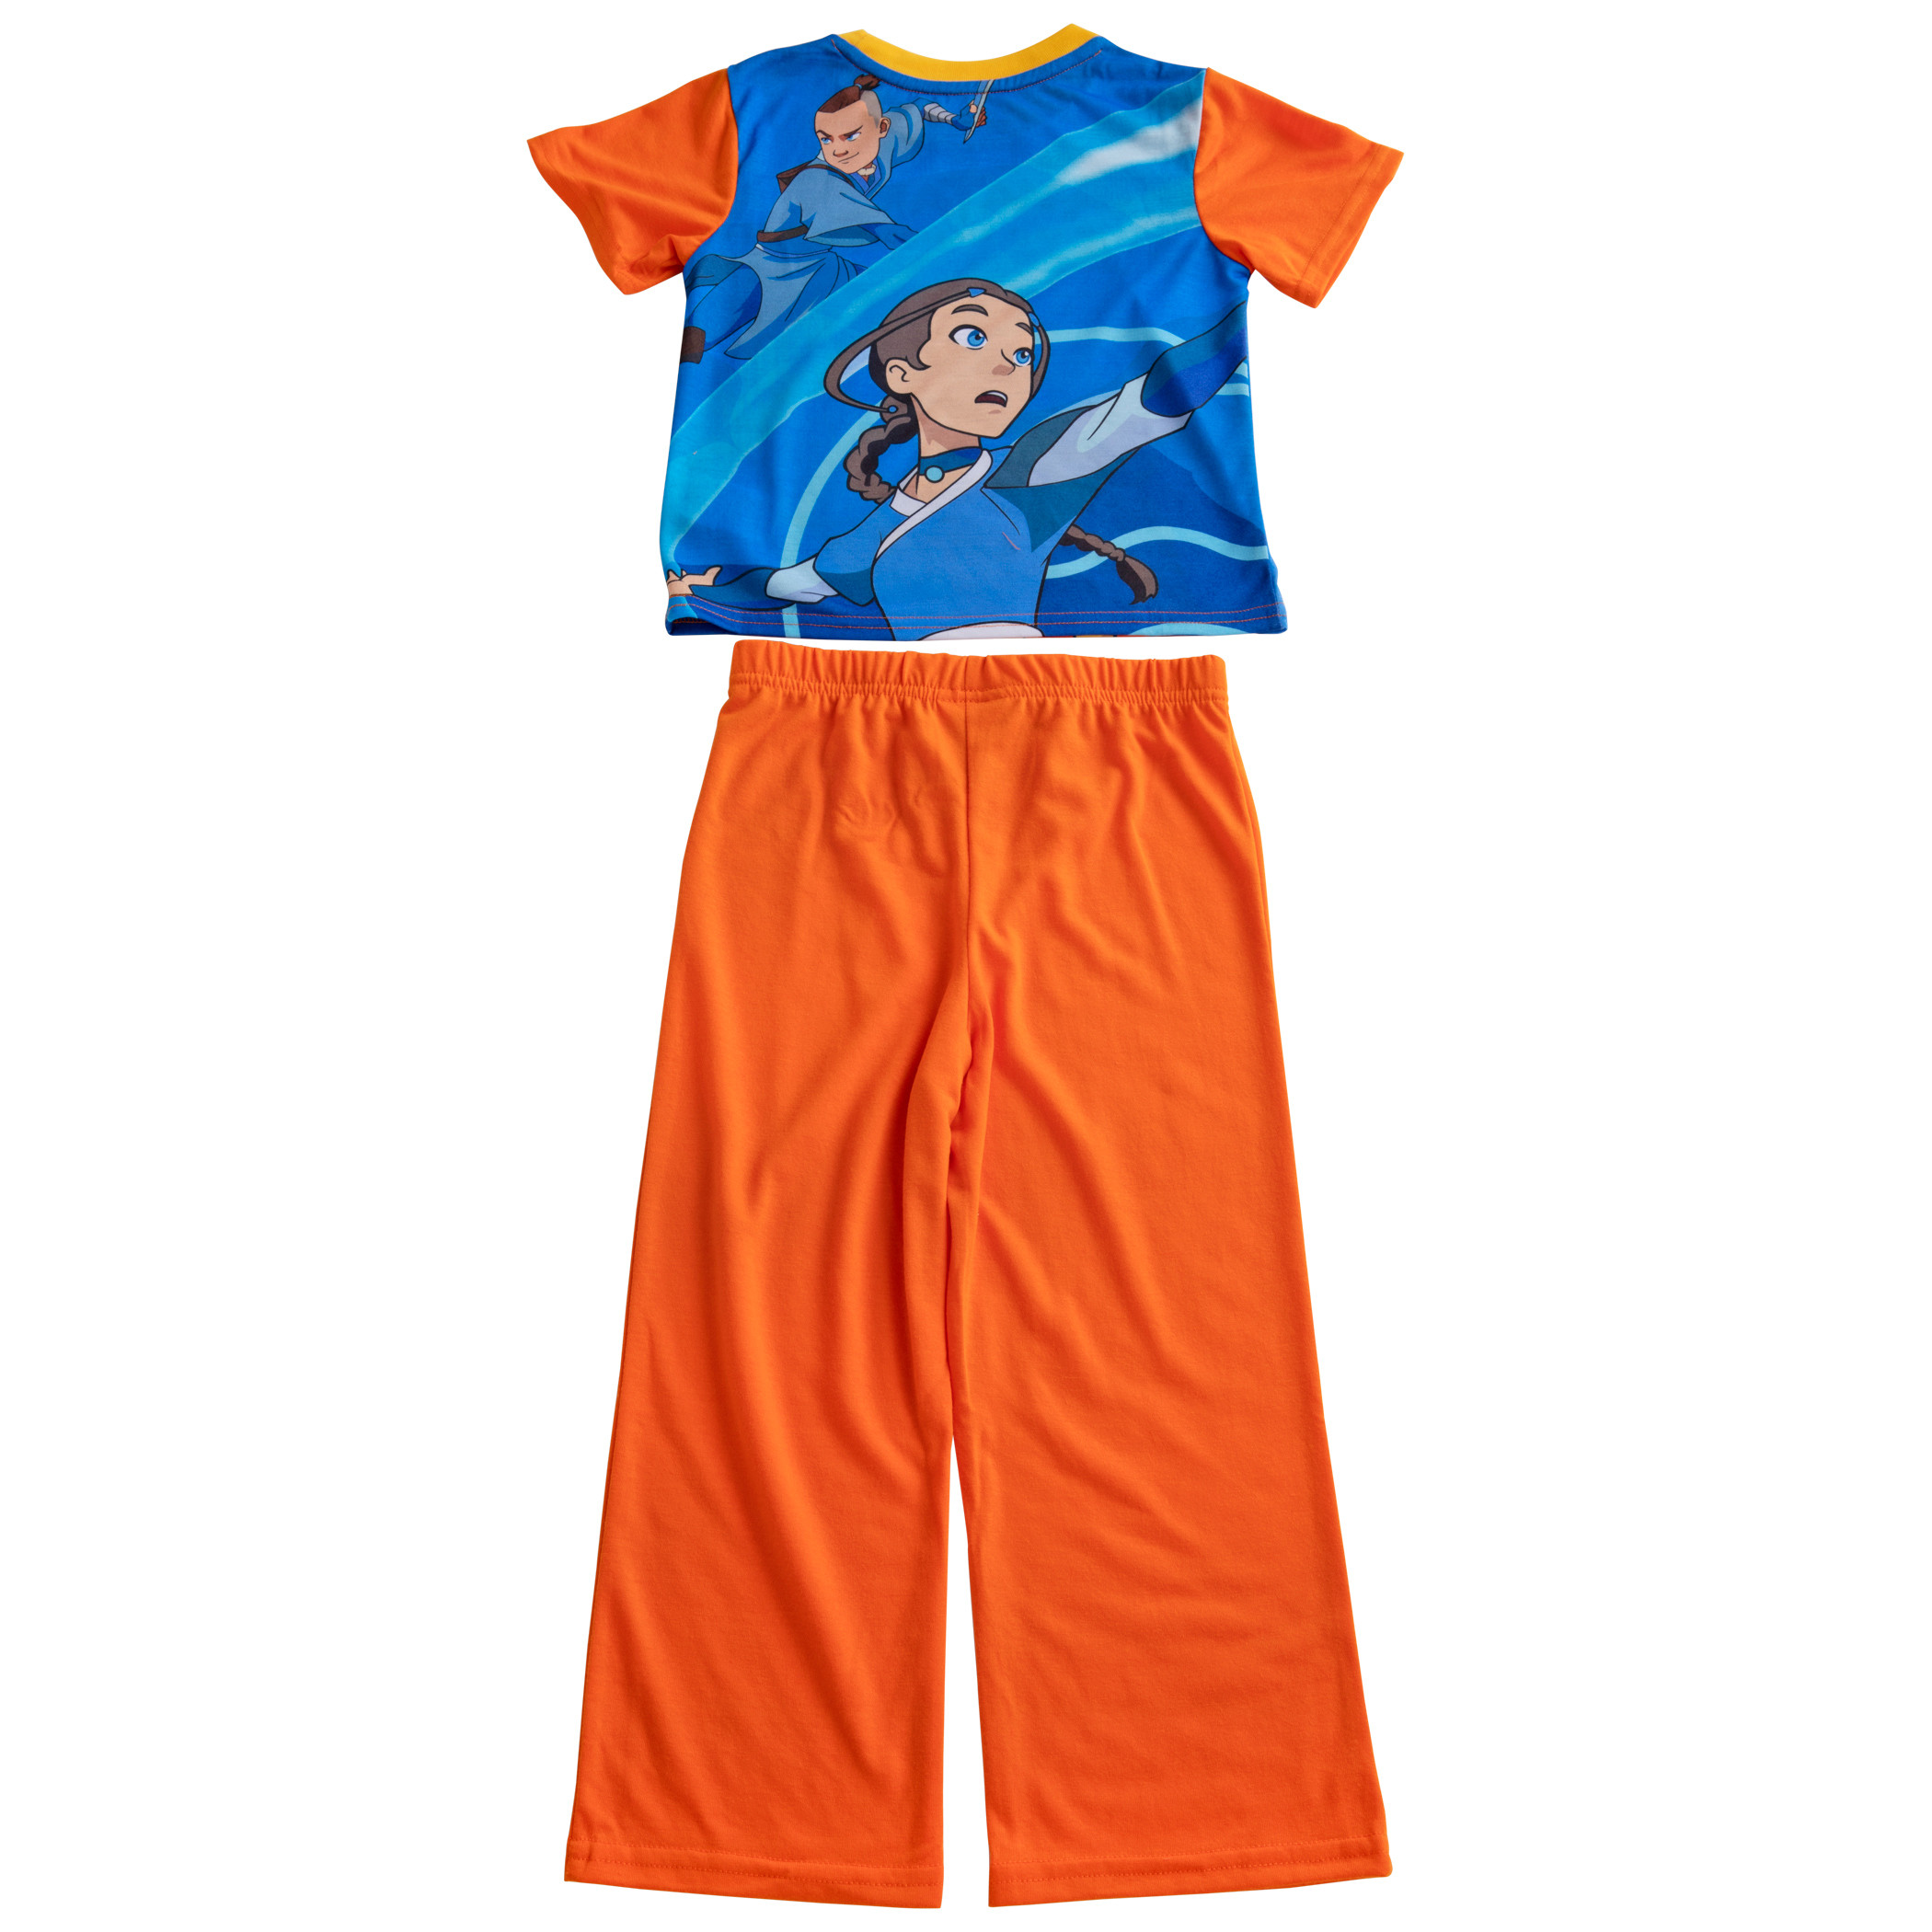 Avatar: The Last Airbender Pajama Shirt and Pant Set